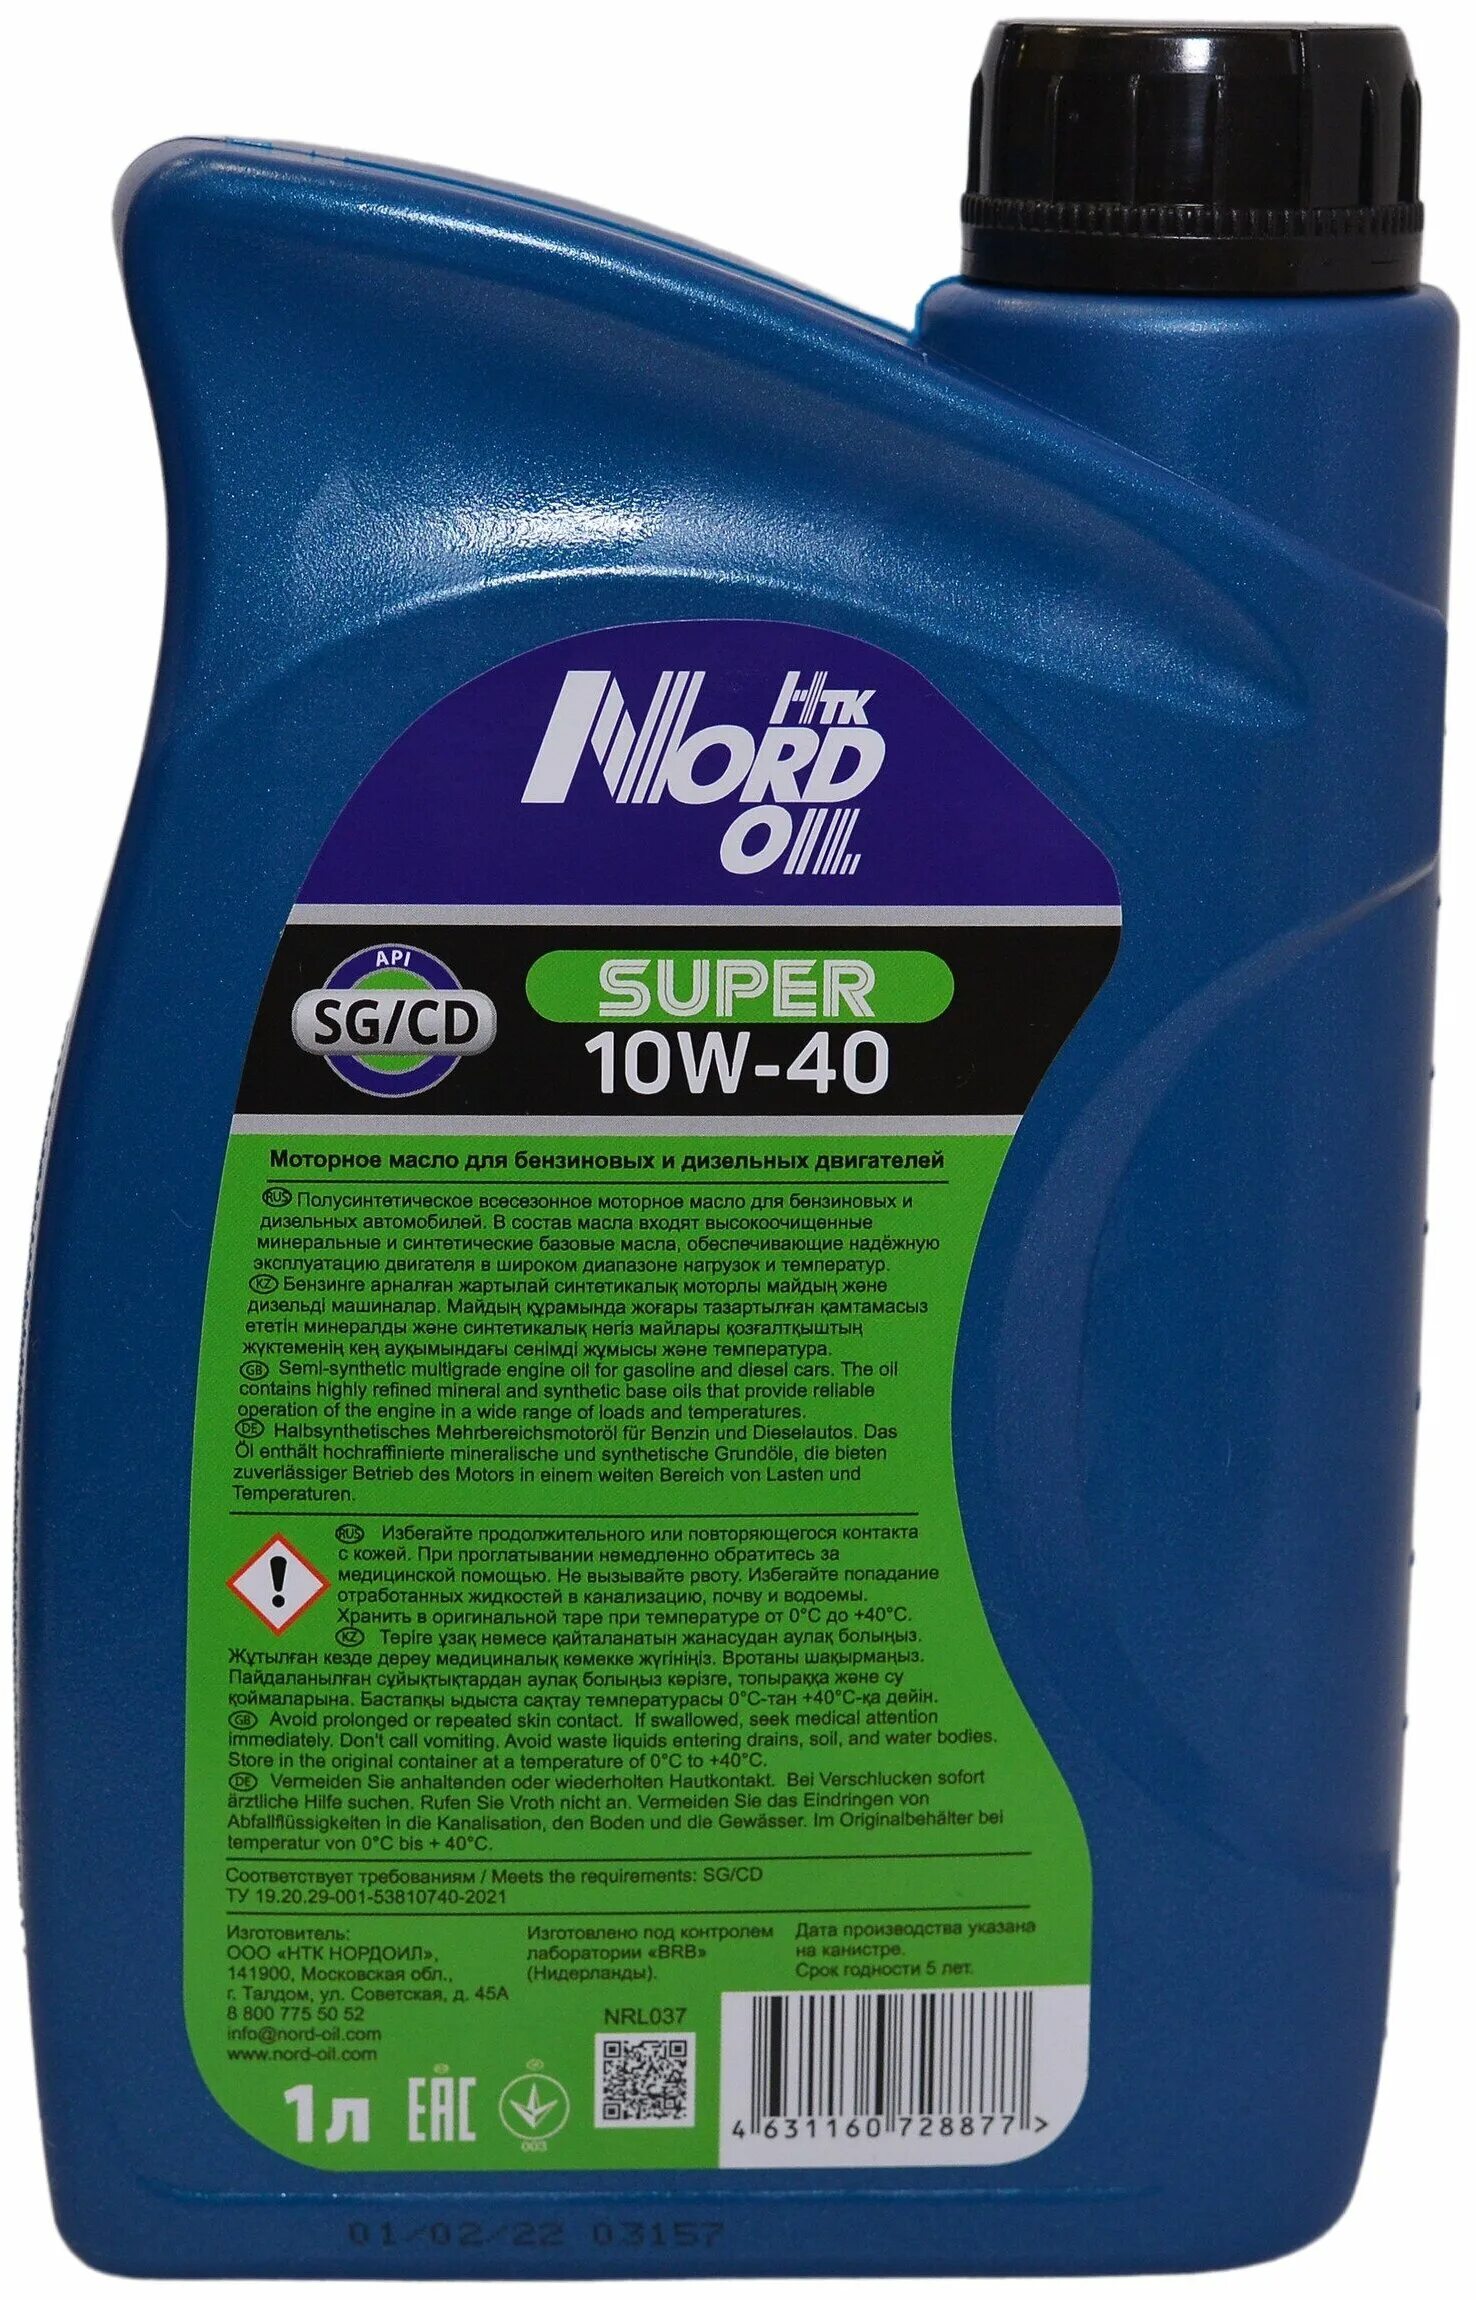 Nord Oil super 10w-40 SG CD П С 4л. 10w40 Nord Oil super SG/CD масло моторное, 1 л. Nrl038 Nord Oil масло Nord Oil super 10w-40 SG/CD 4л. Моторное масло super Hoss 10w40.